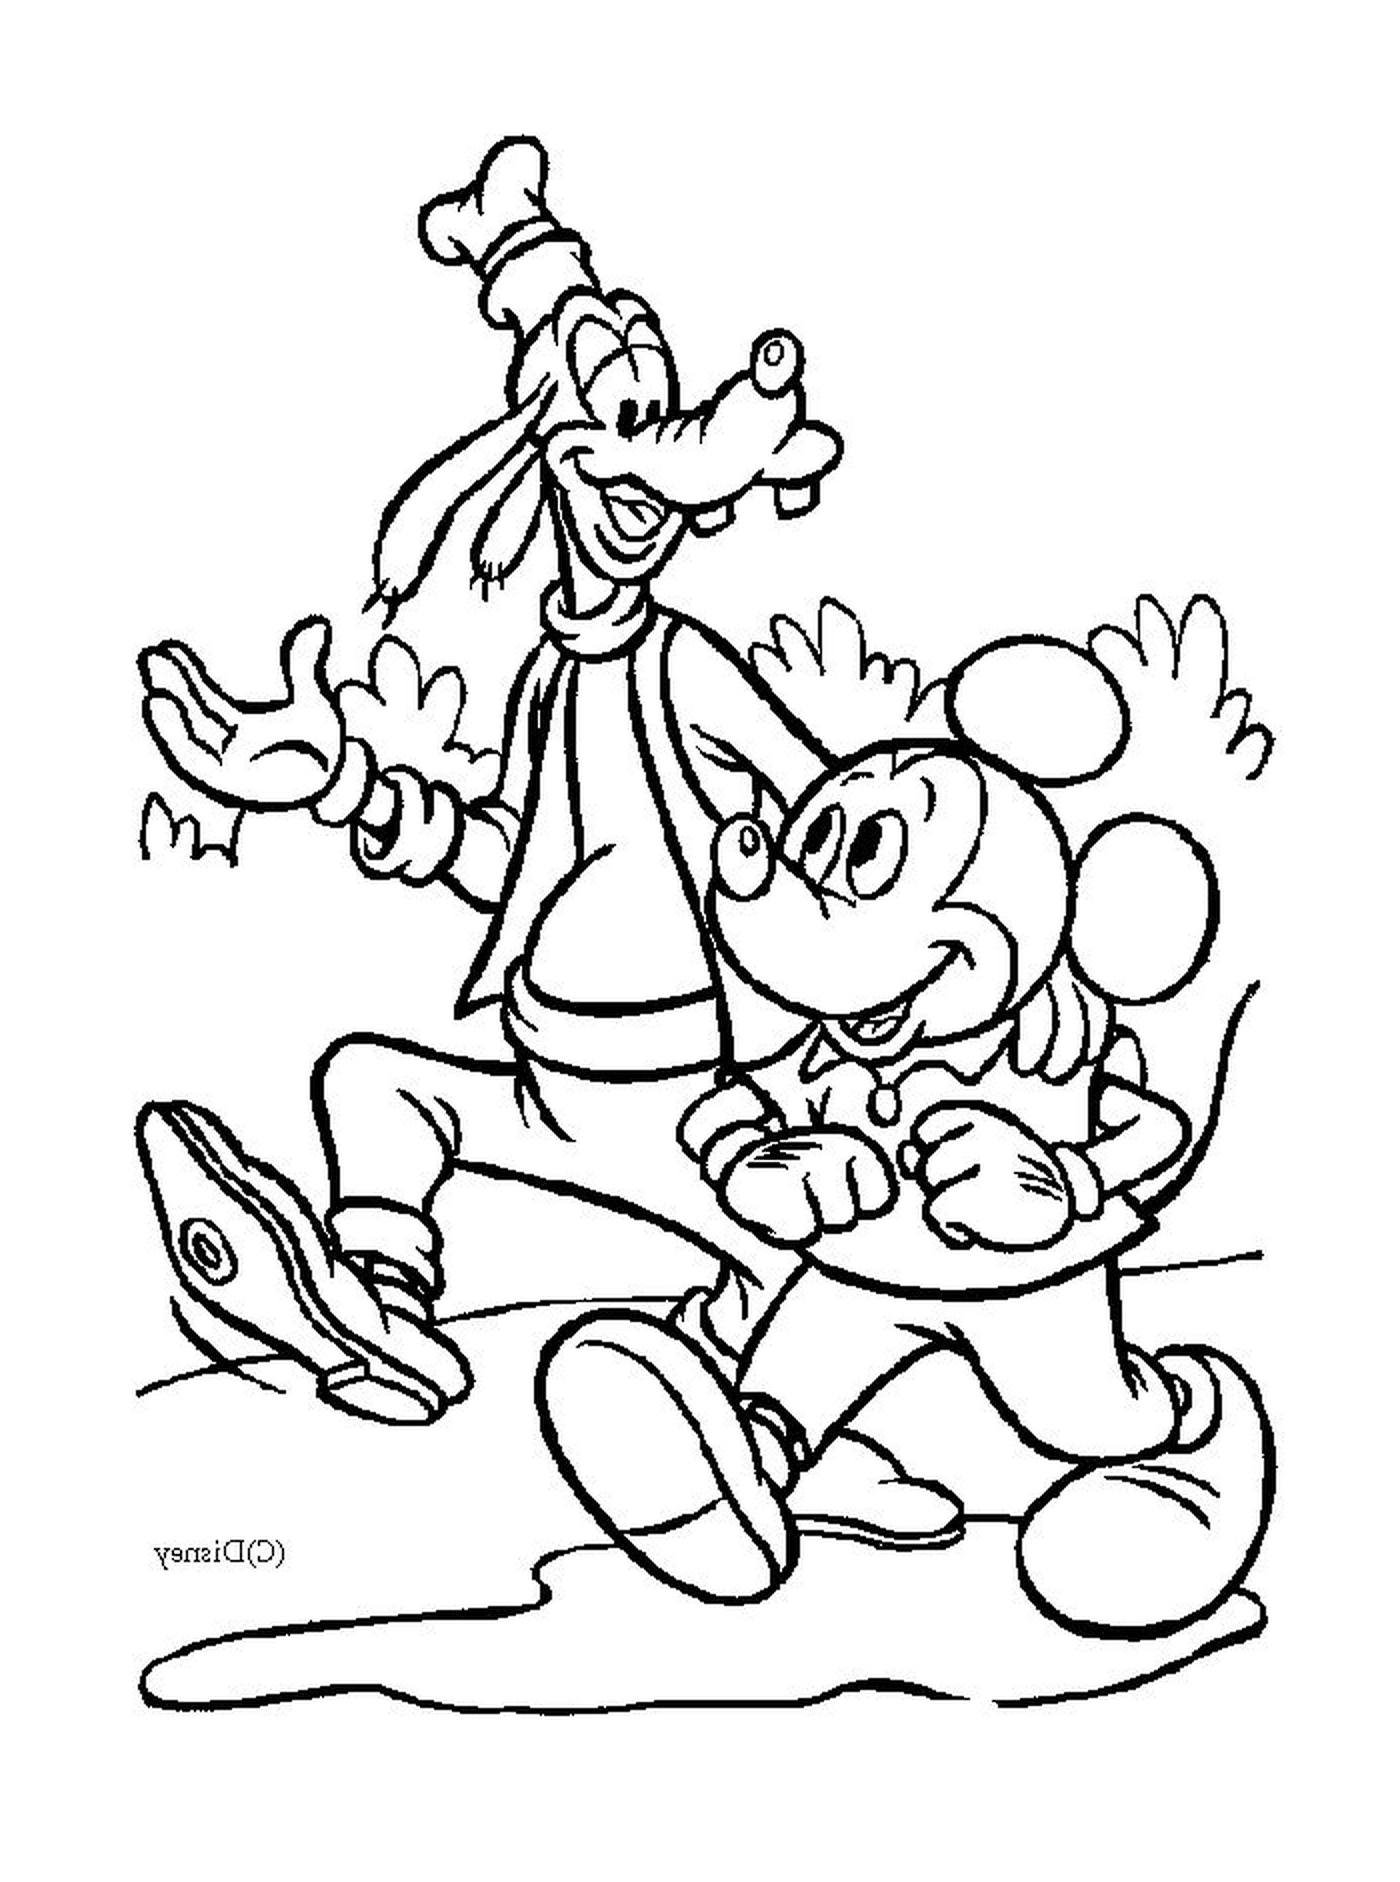  Mickey y su amigo Dingo están caminando 